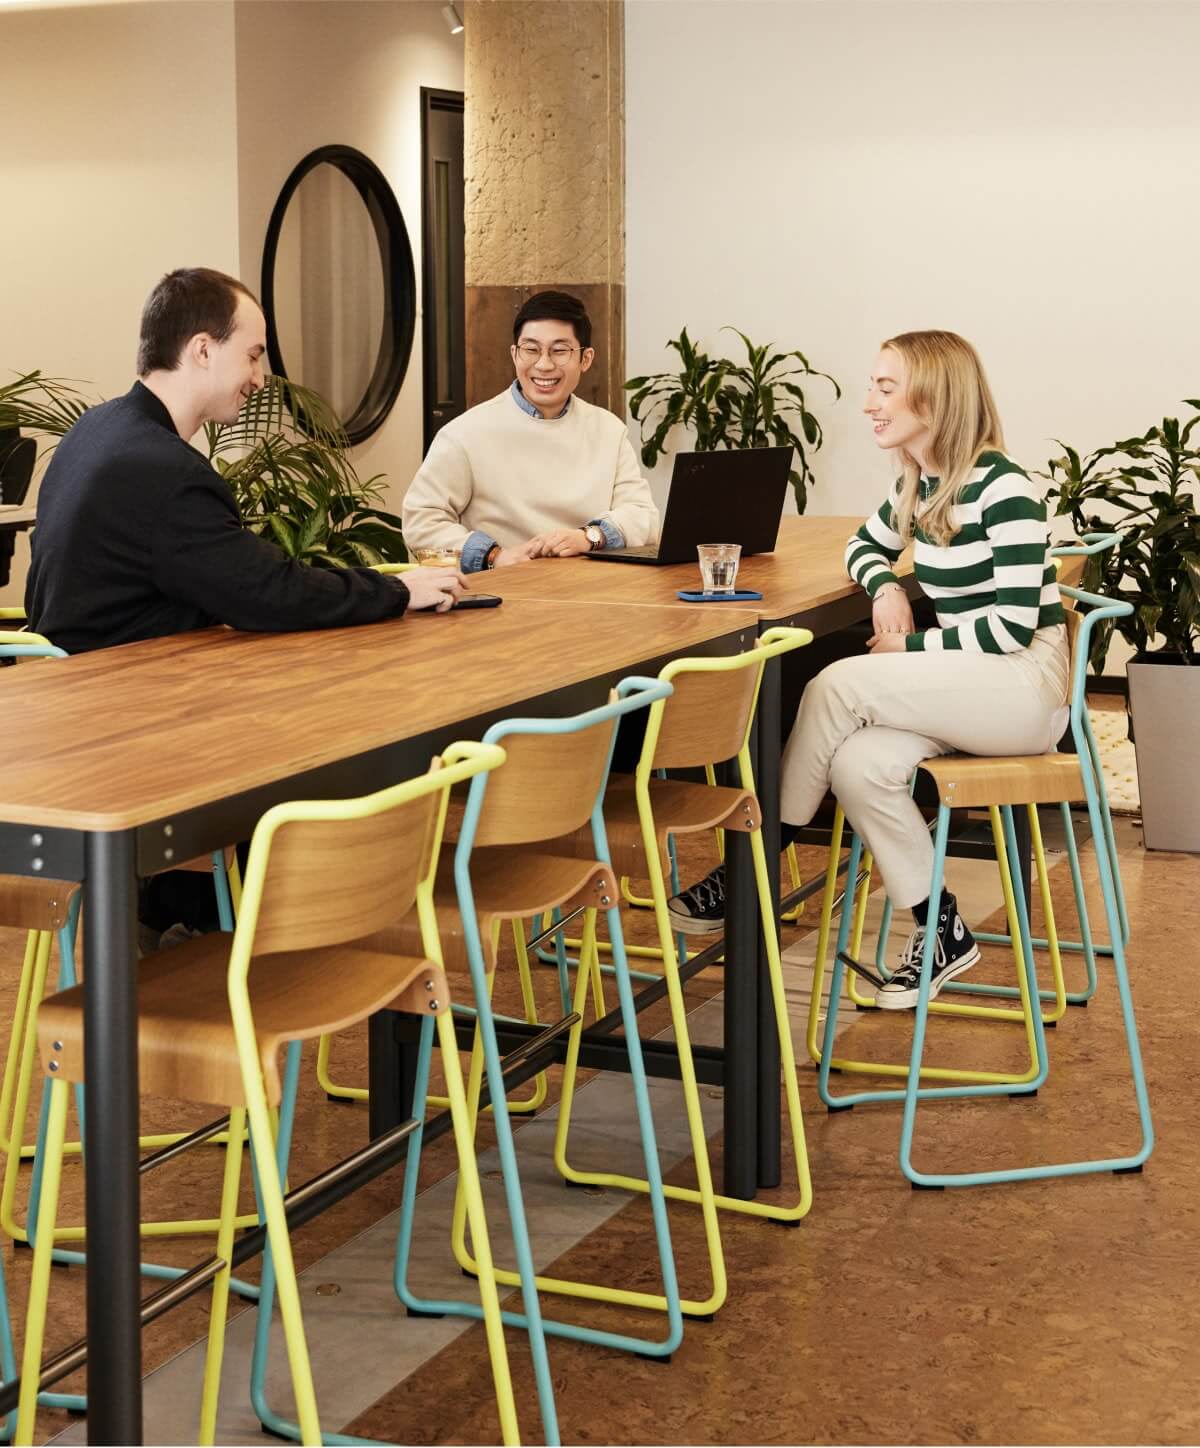 Trois employés de Workleap collaborant dans un cadre moderne et informel, favorisant le travail d'équipe et l'innovation